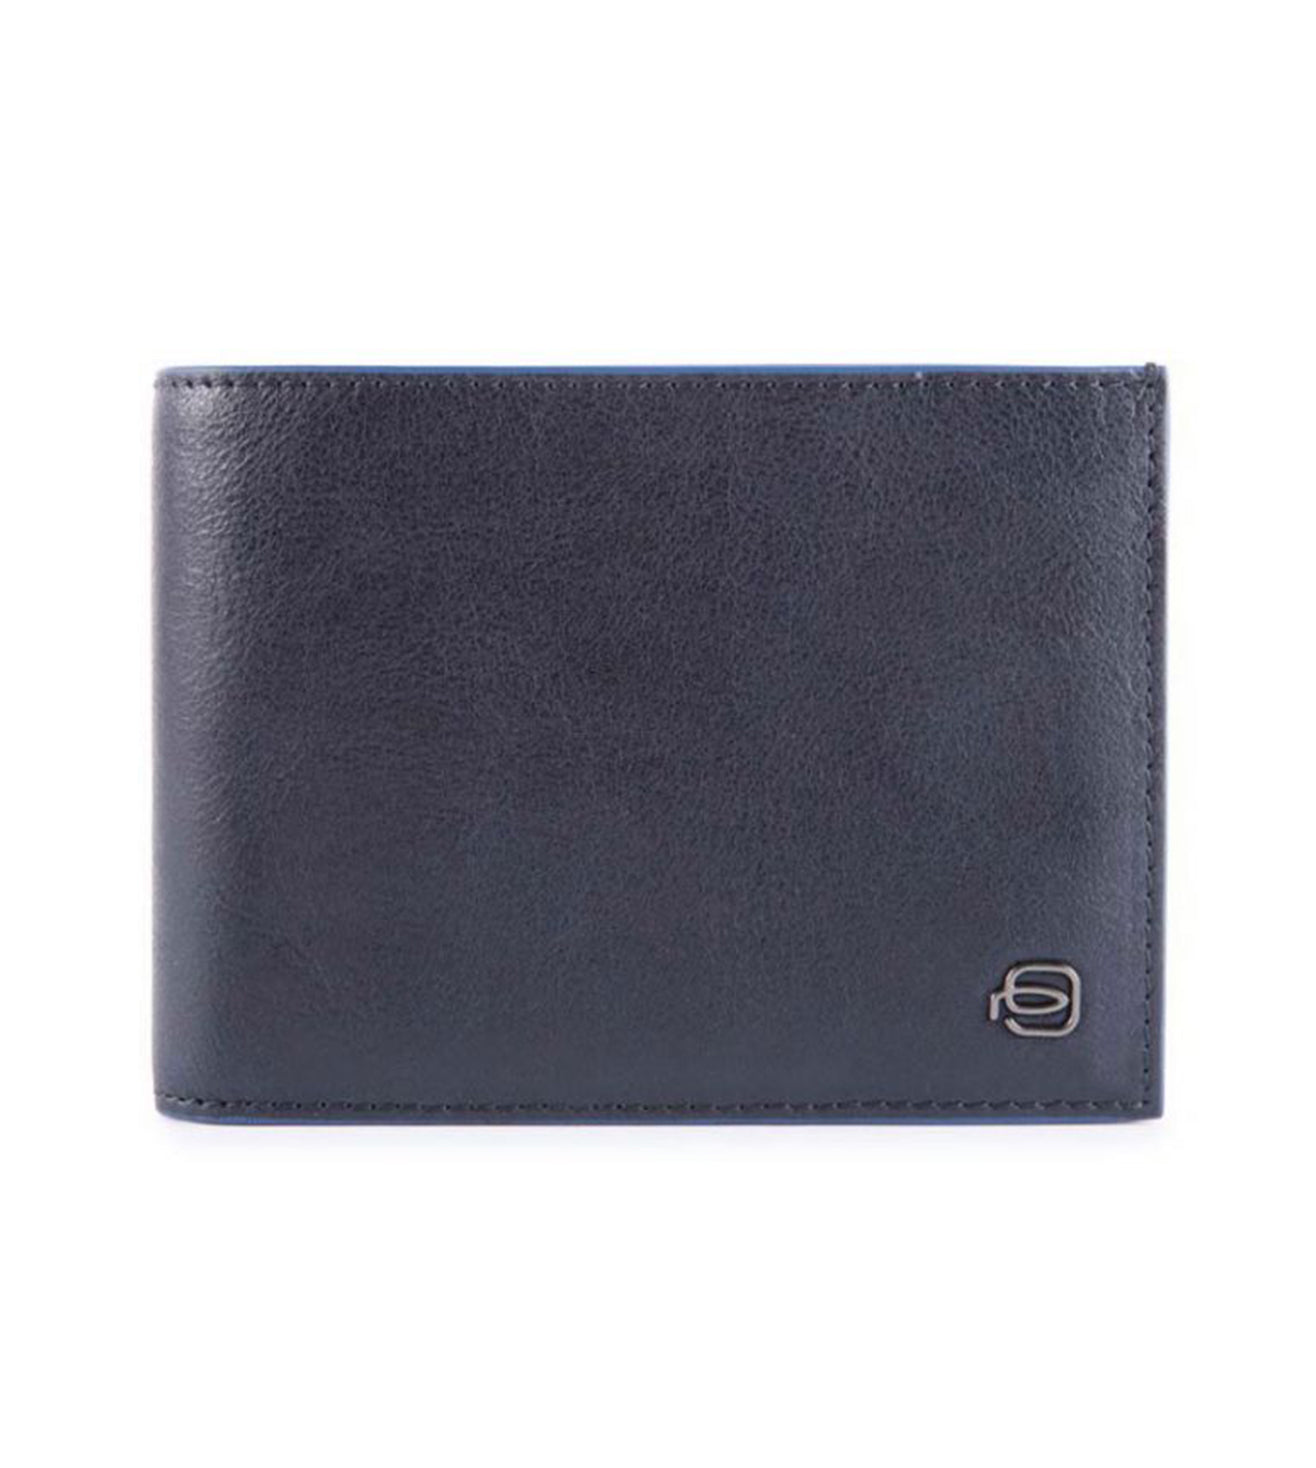 Piquadro Blue Square Men's Wallet